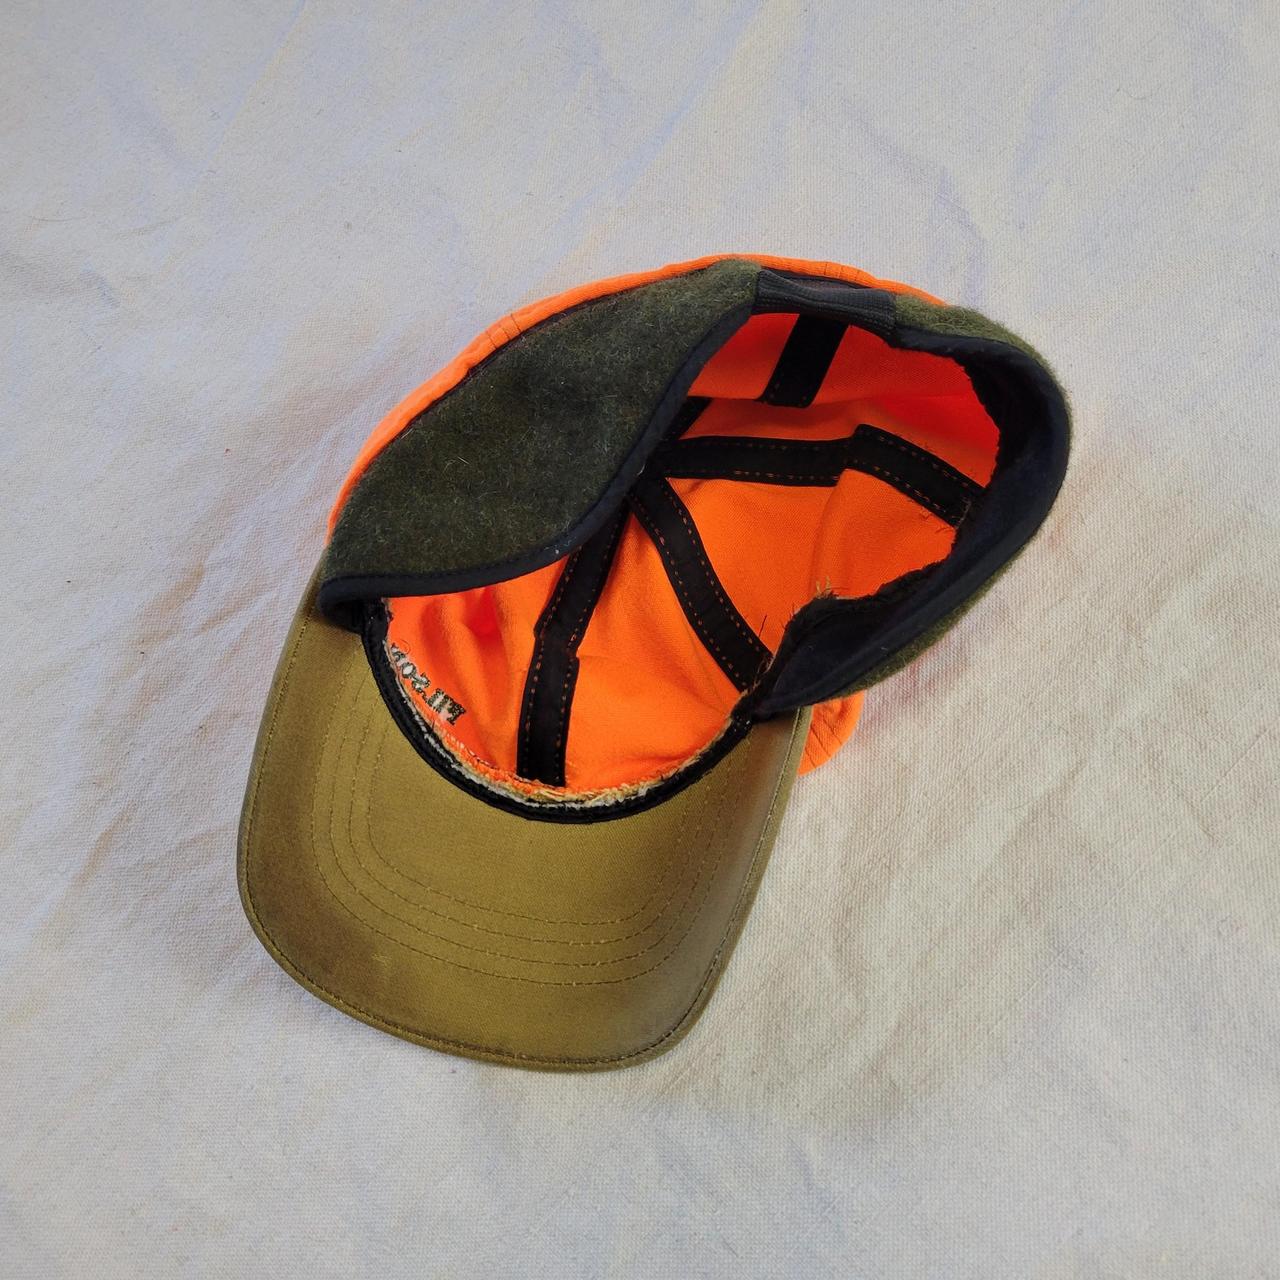 Product Image 3 - Vintage Filson orange hat

Super cool